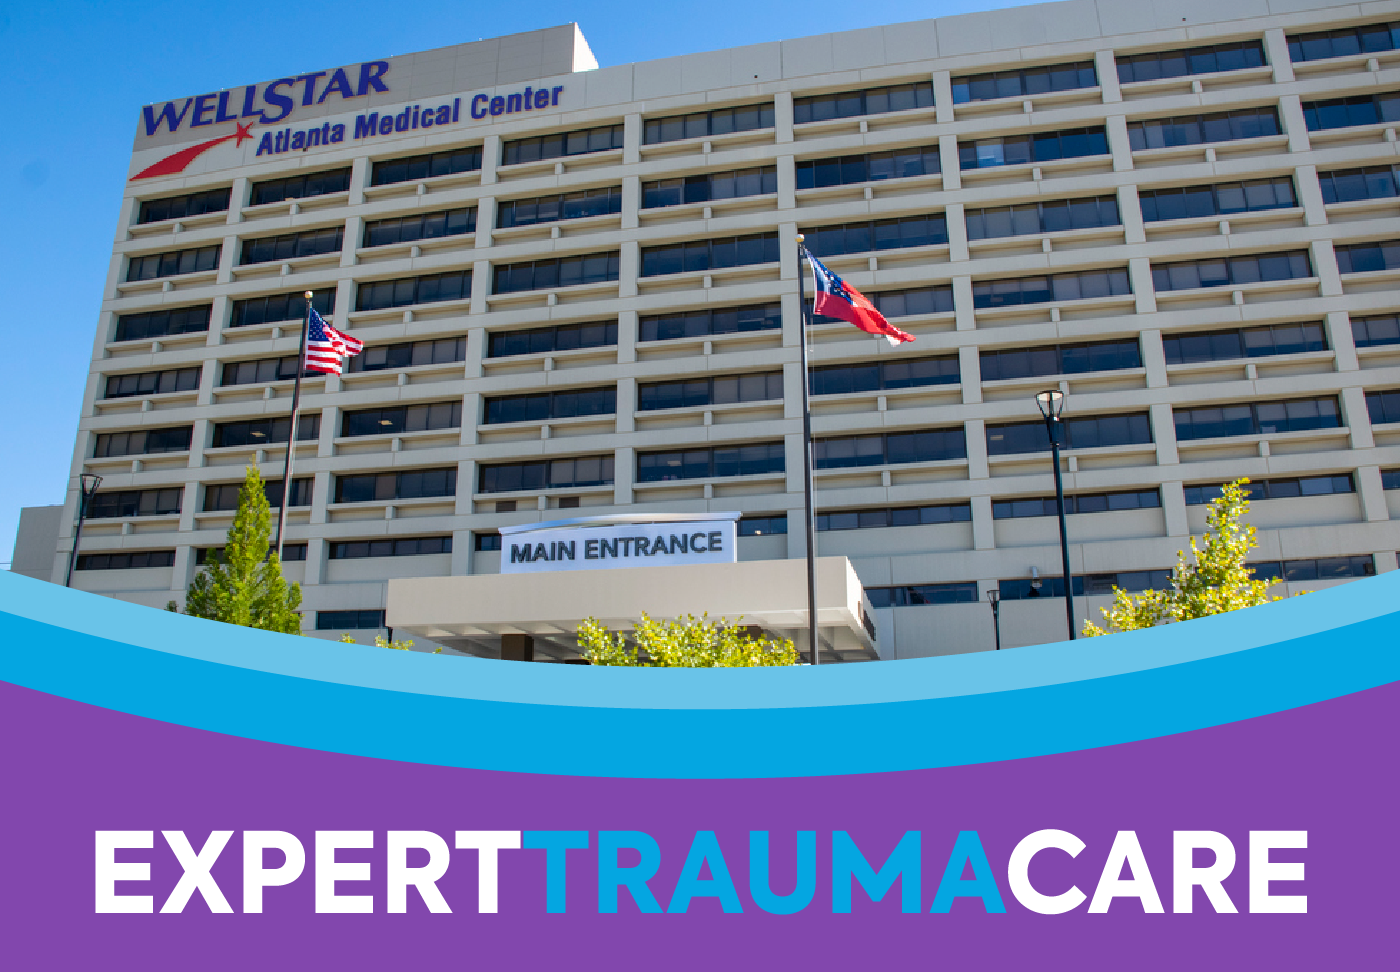 Exterior of Wellstar Atlanta Medical Center and headline Expert Trauma Care.